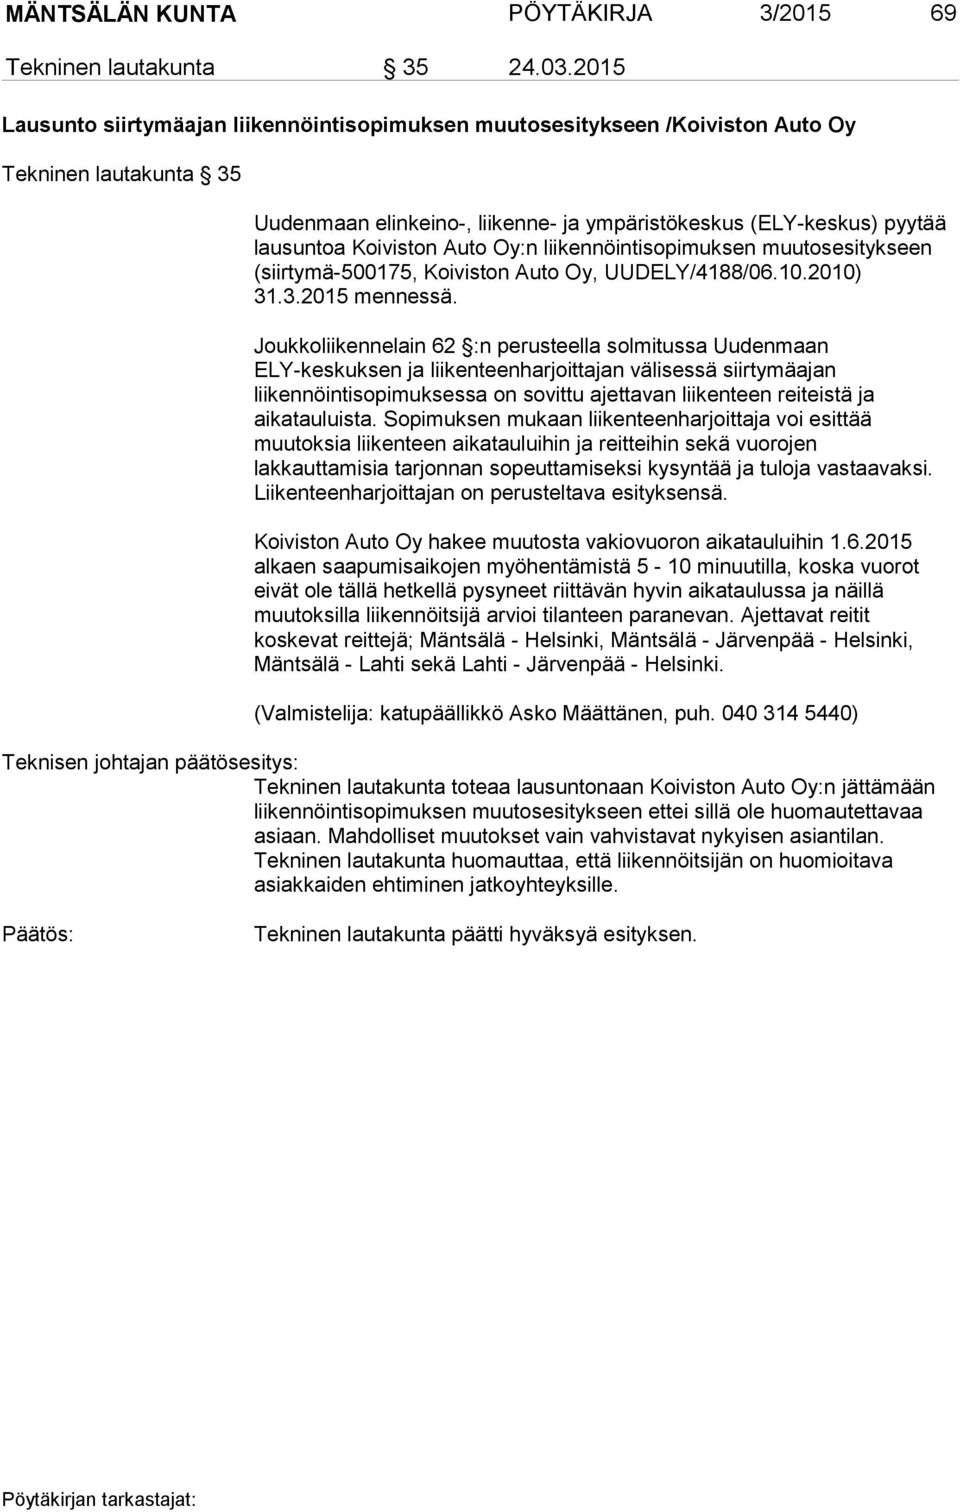 Auto Oy:n liikennöintisopimuksen muutosesitykseen (siirtymä-500175, Koiviston Auto Oy, UUDELY/4188/06.10.2010) 31.3.2015 mennessä.